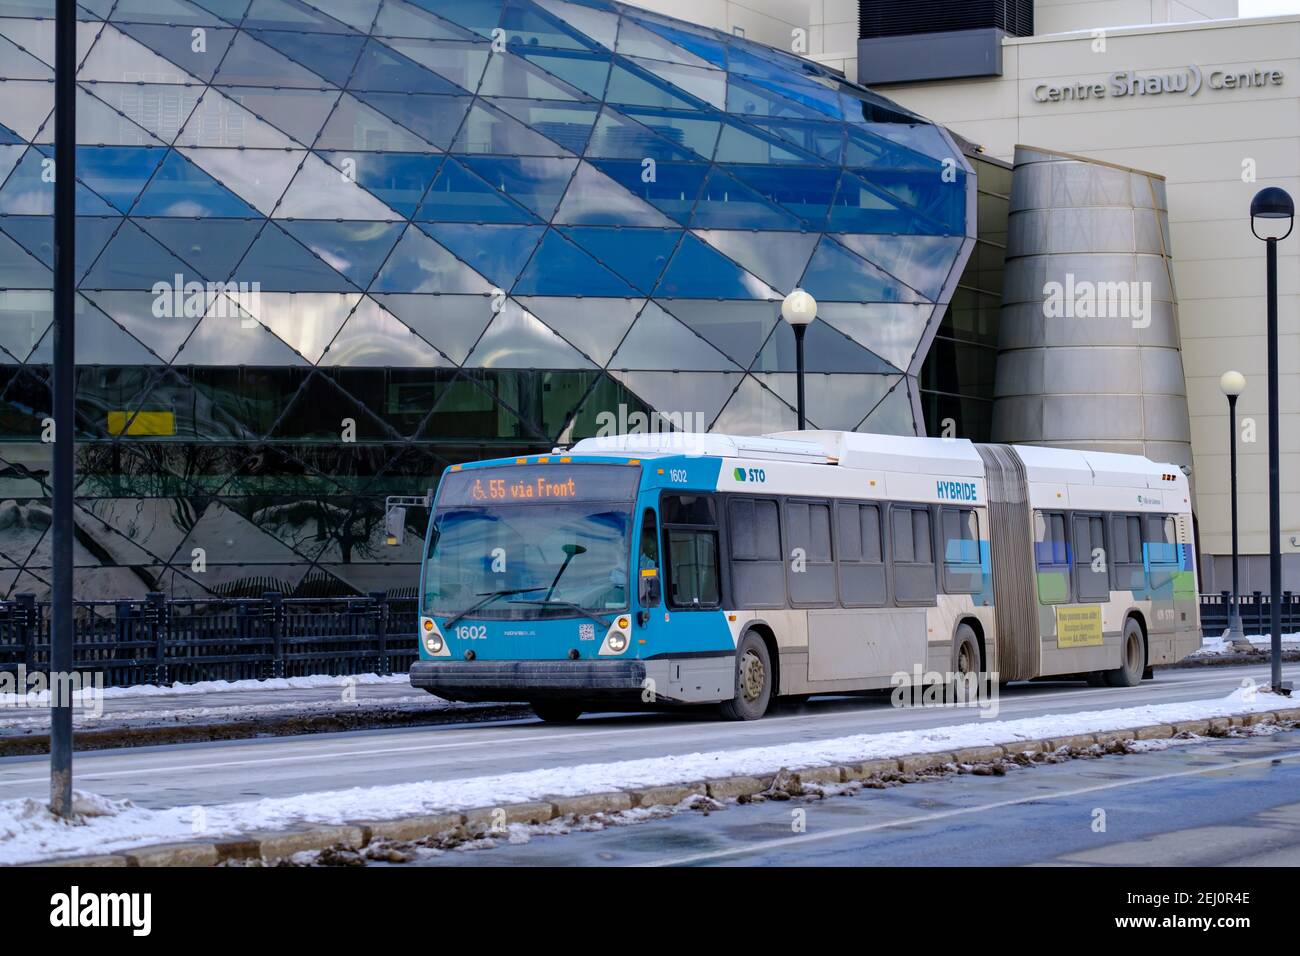 Ottawa, Ontario, Kanada - 6. Februar 2021: Ein Stadtbus der Société de Transport de l'Outaouais (STO) Transitdienst in Quebec kreuzt die Stockfoto